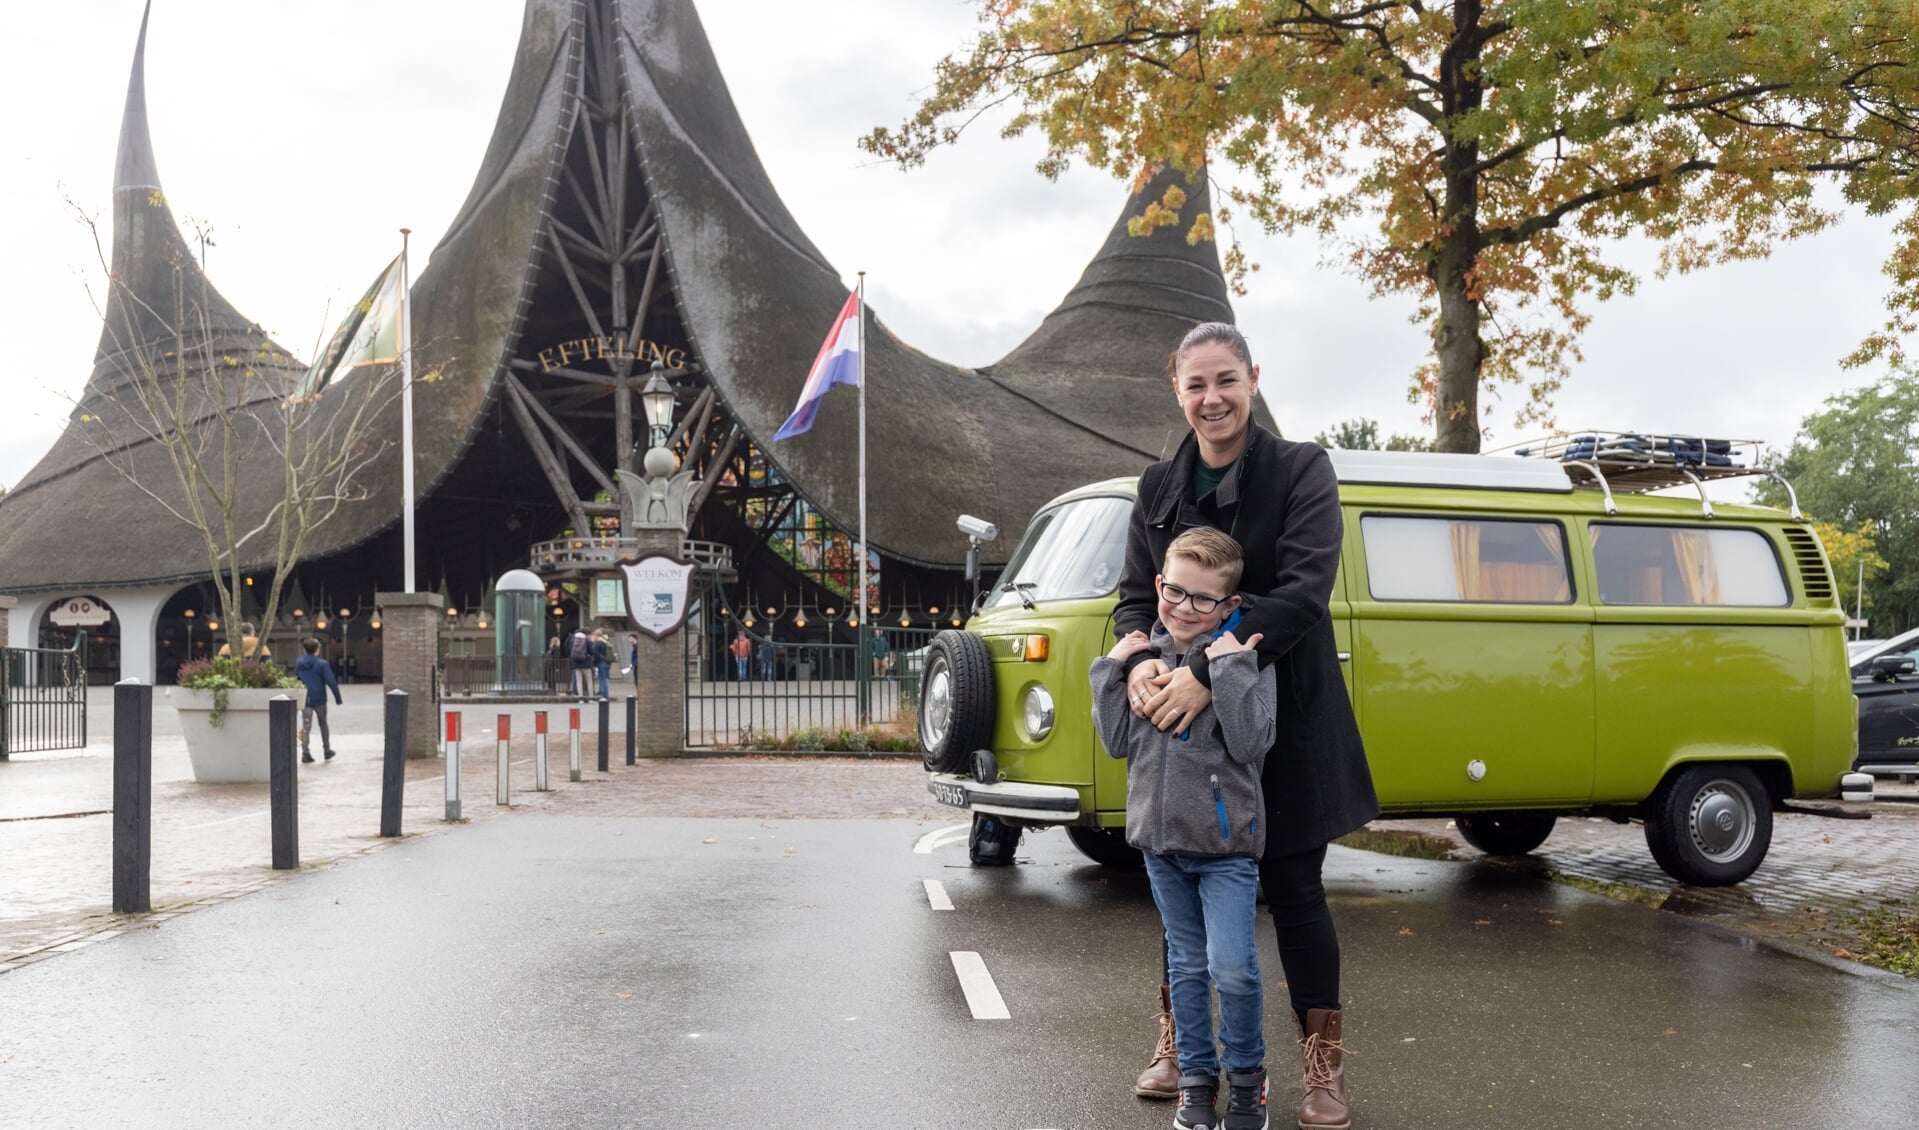 Het bezoek aan het Attractiepark in Kaatsheuvel was een van de hoogtepunten tijdens de Verwendag voor de Dedemsvaartse Wesley en zijn moeder. 